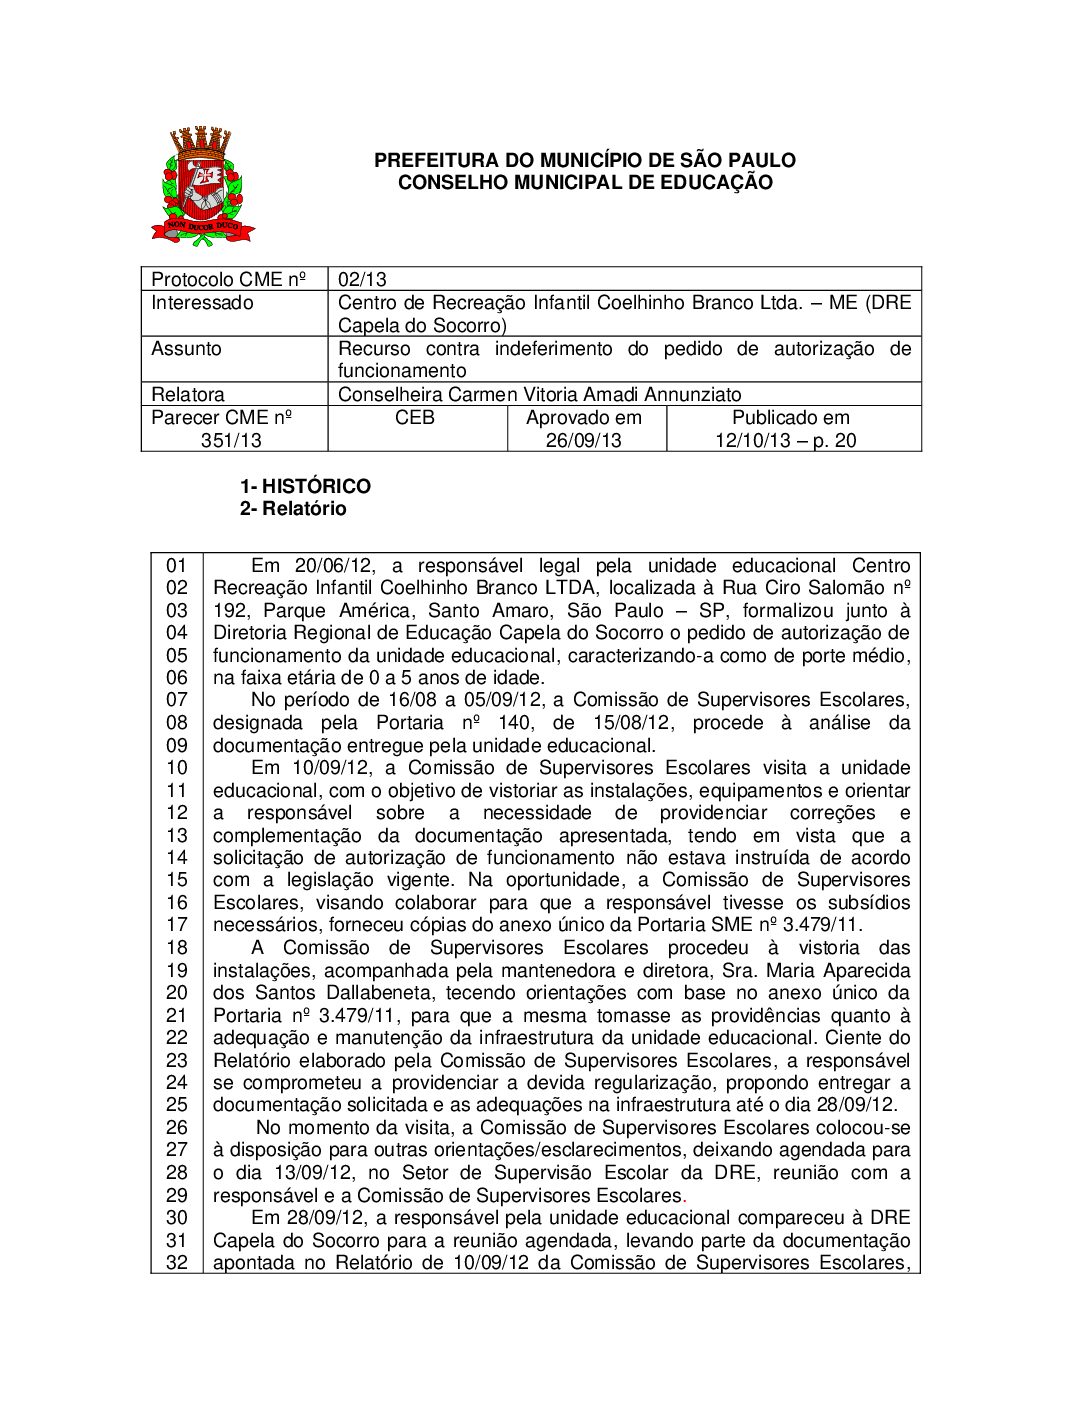 Parecer CME nº 351/2013 - Centro de Recreação Infantil Coelhinho Branco Ltda ME (DRE Capela do Socorro) - Recurso contra indeferimento do pedido de autorização de funcionamento 